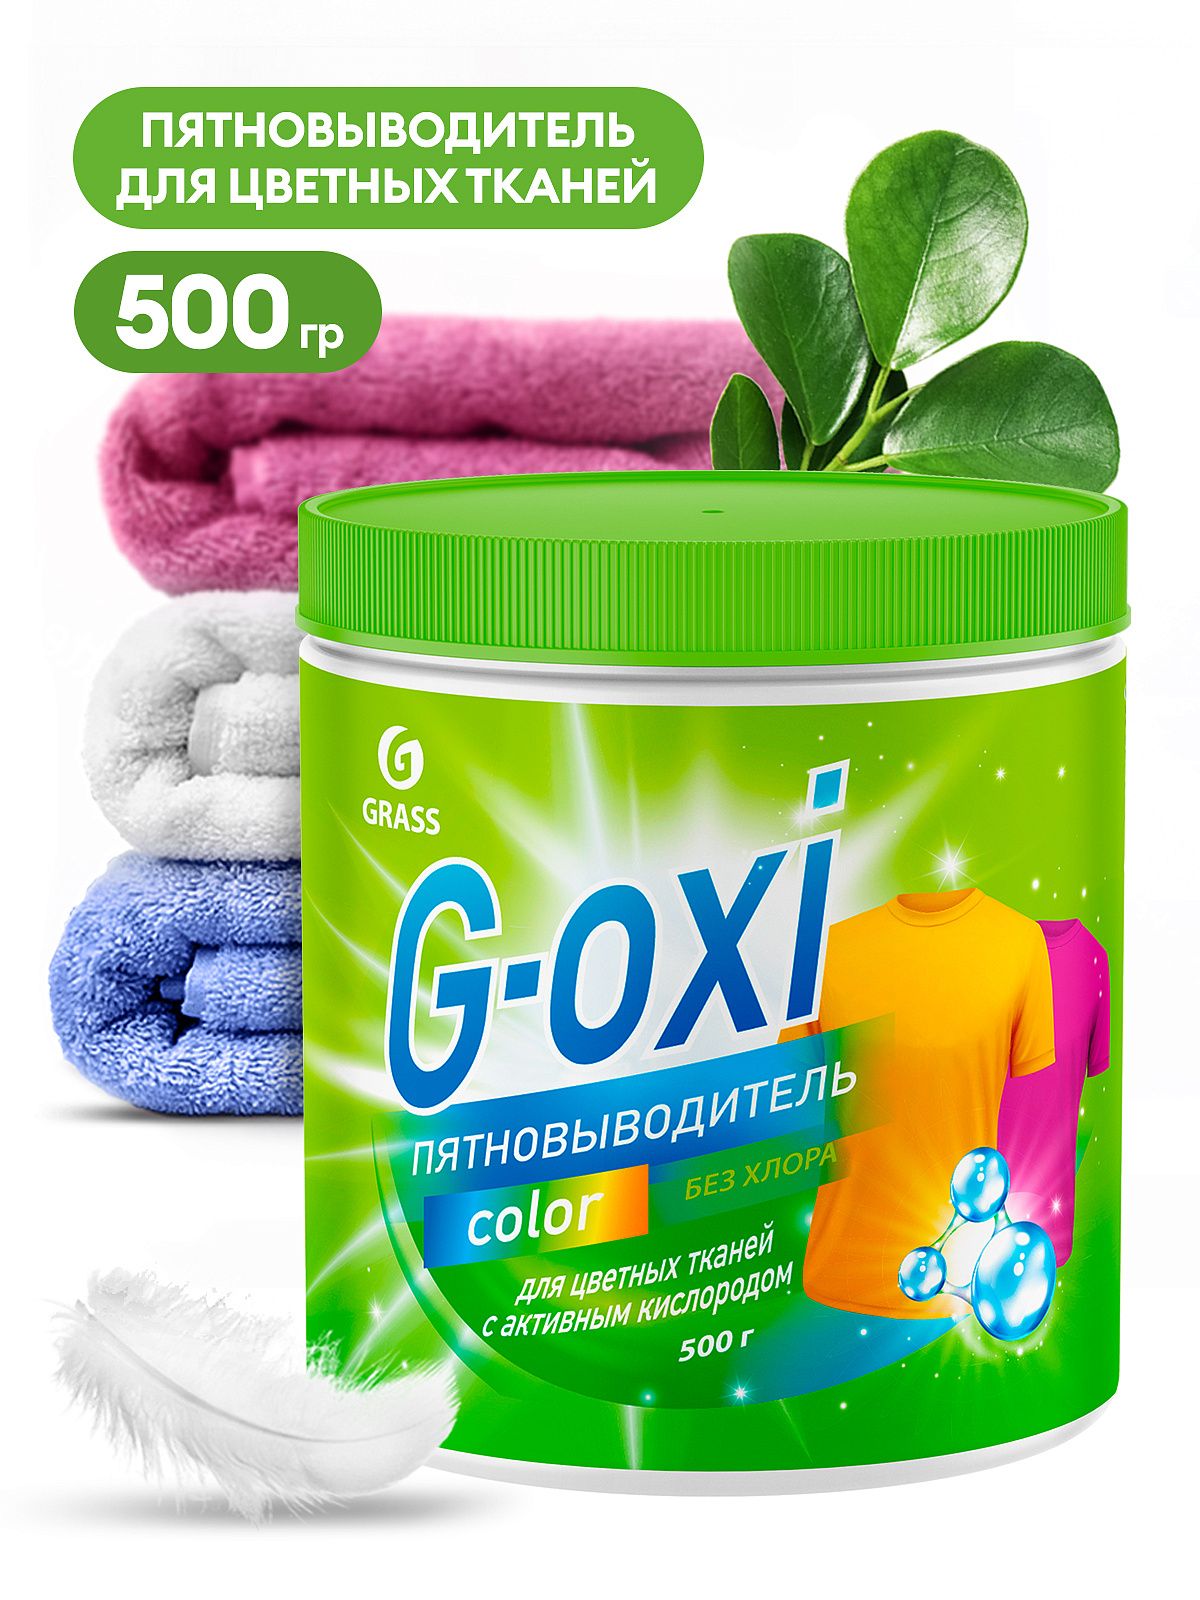 GRASS G-oxi пятновыводитель д/цветных вещей 500гр.